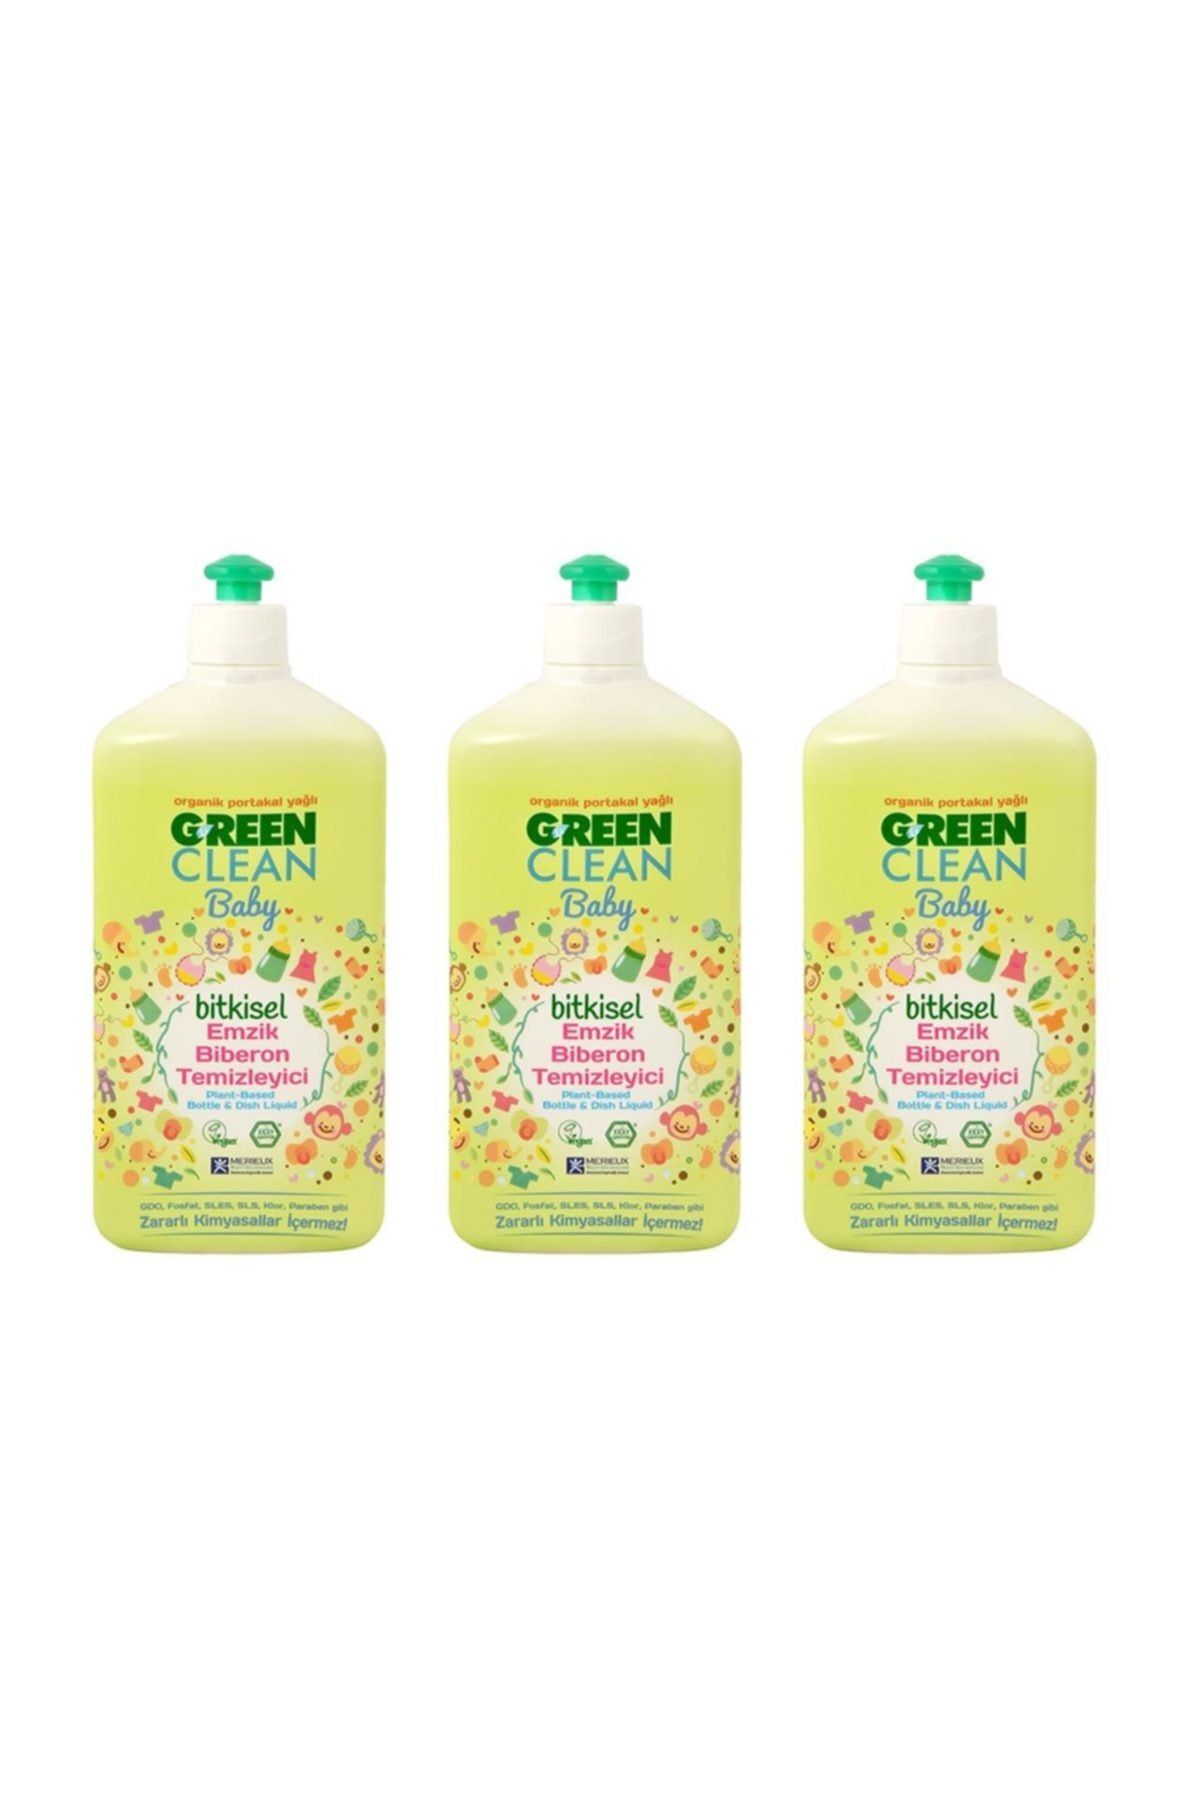 Green Clean Organik Portakal Yağlı Baby Biberon Emzik Temizleyici 500 ml - 3'lü set